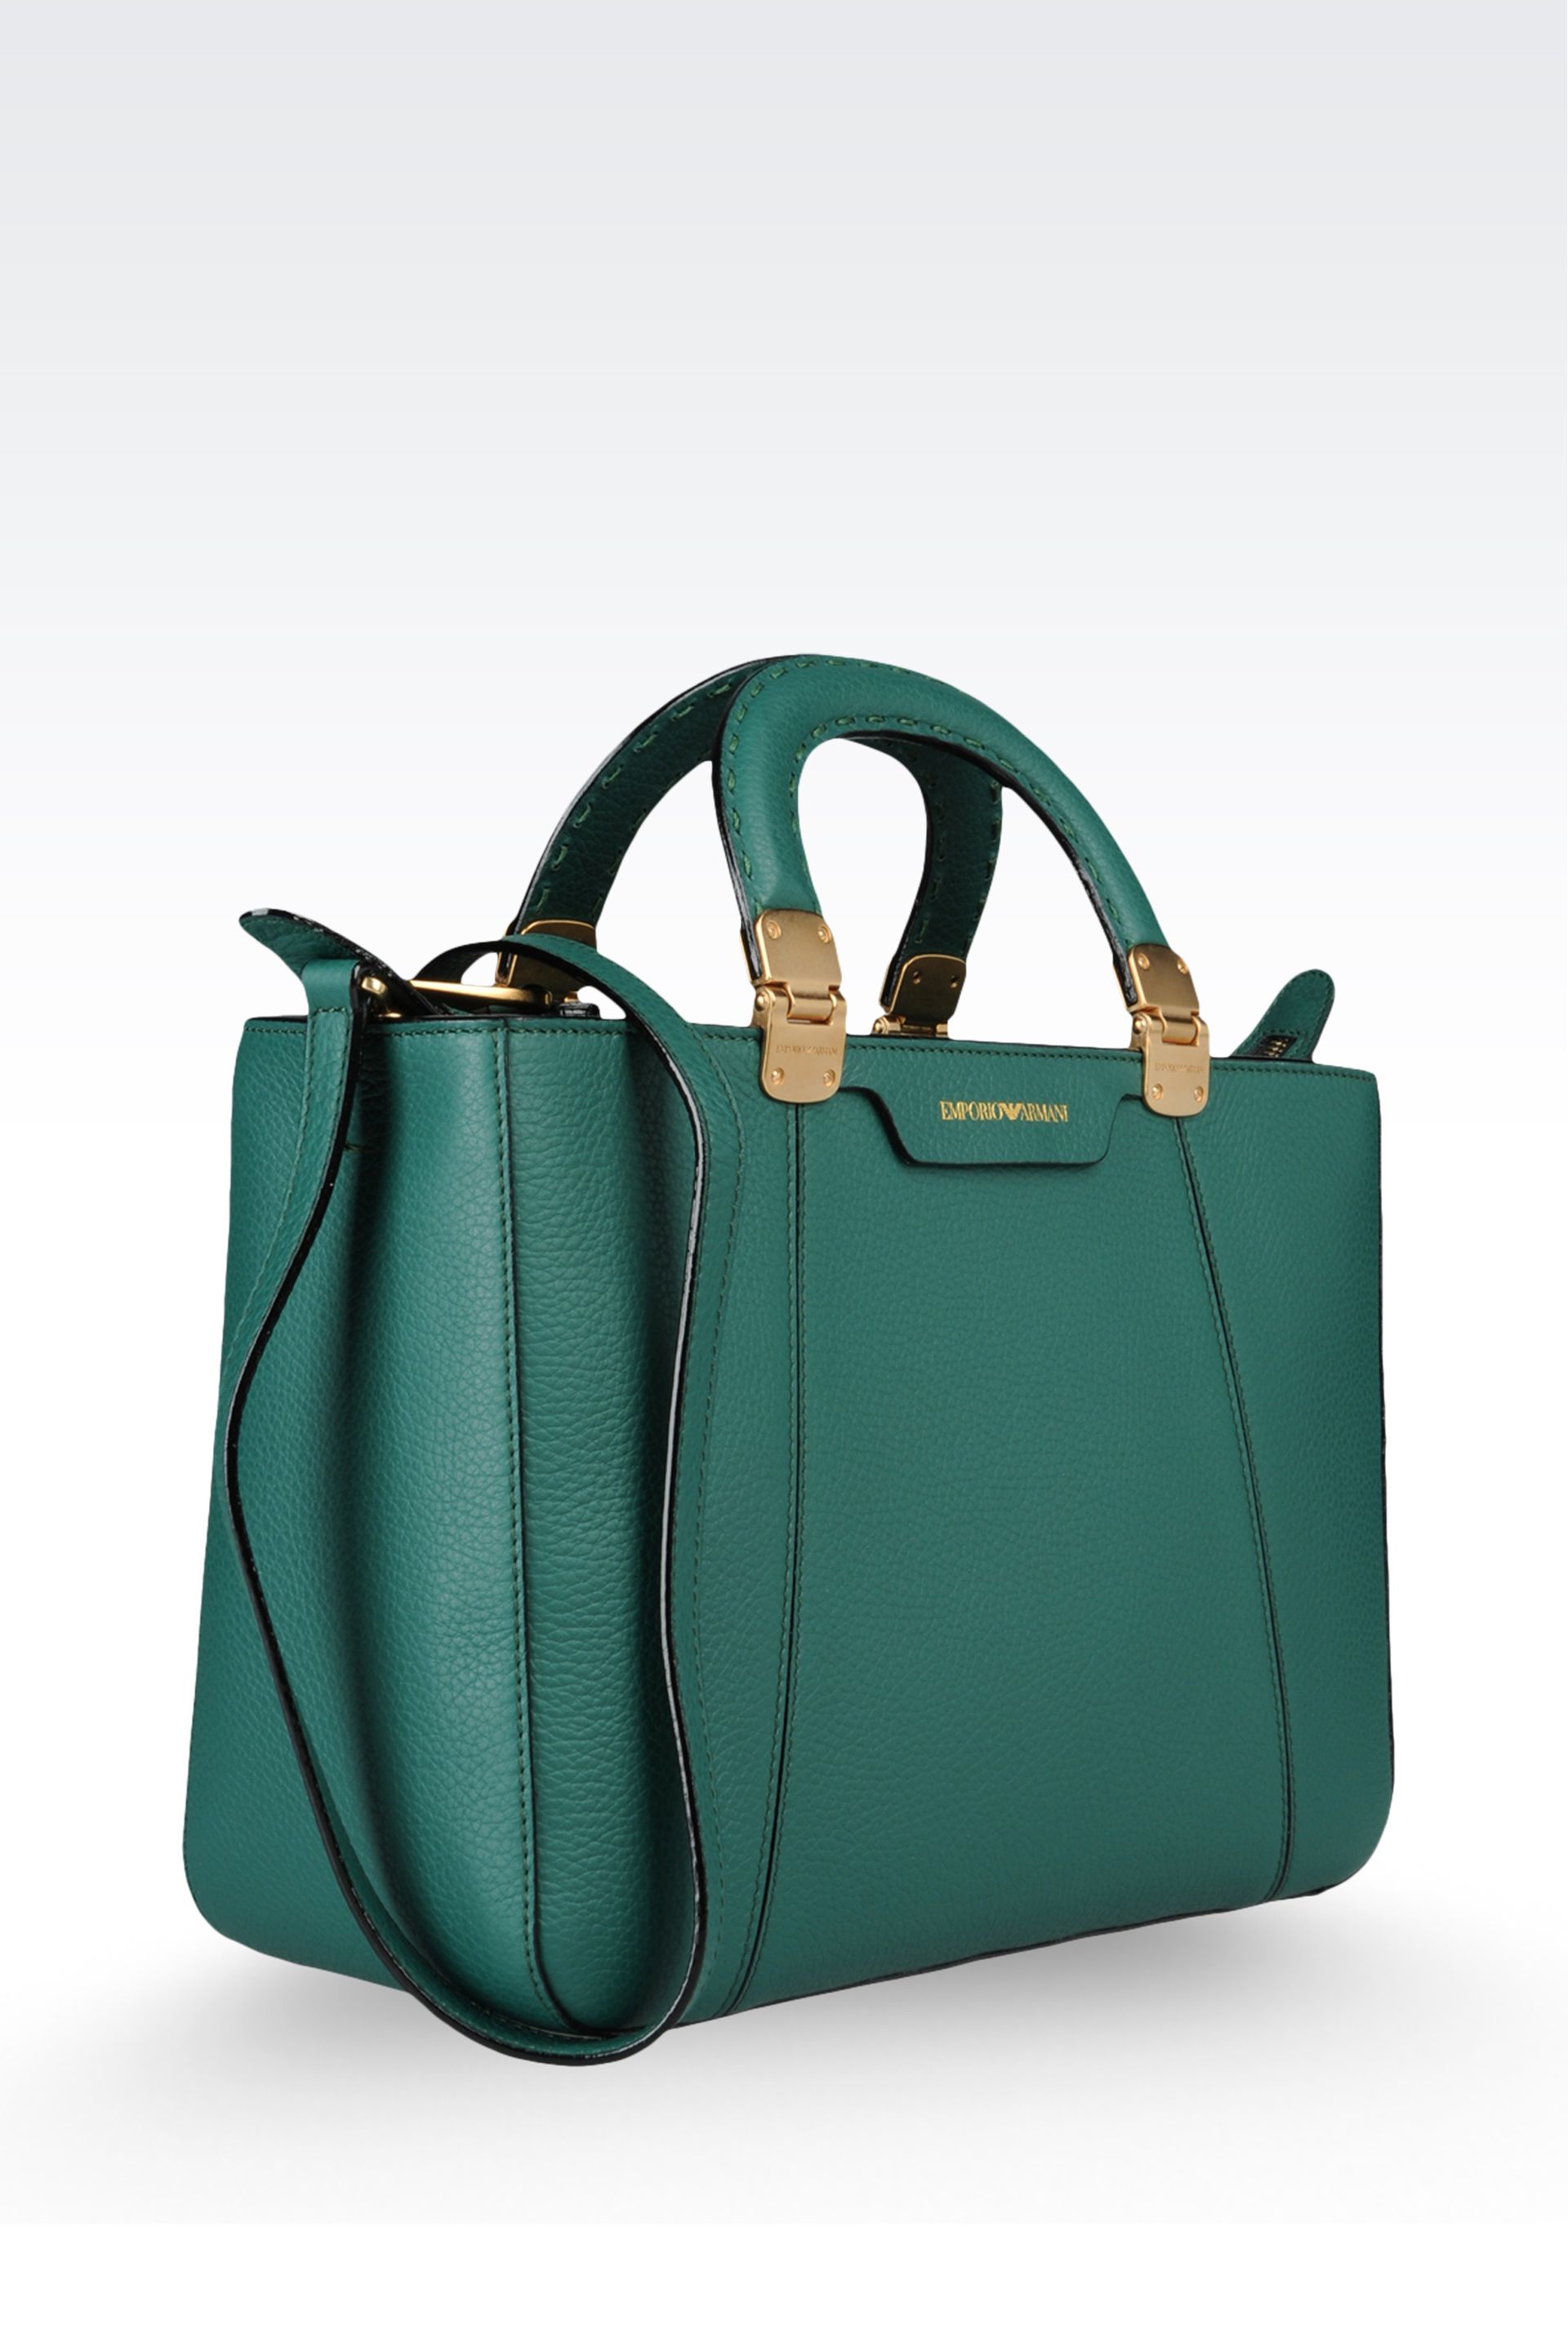 Emporio armani Calfskin Handbag with Detachable Shoulder Strap in Green ...